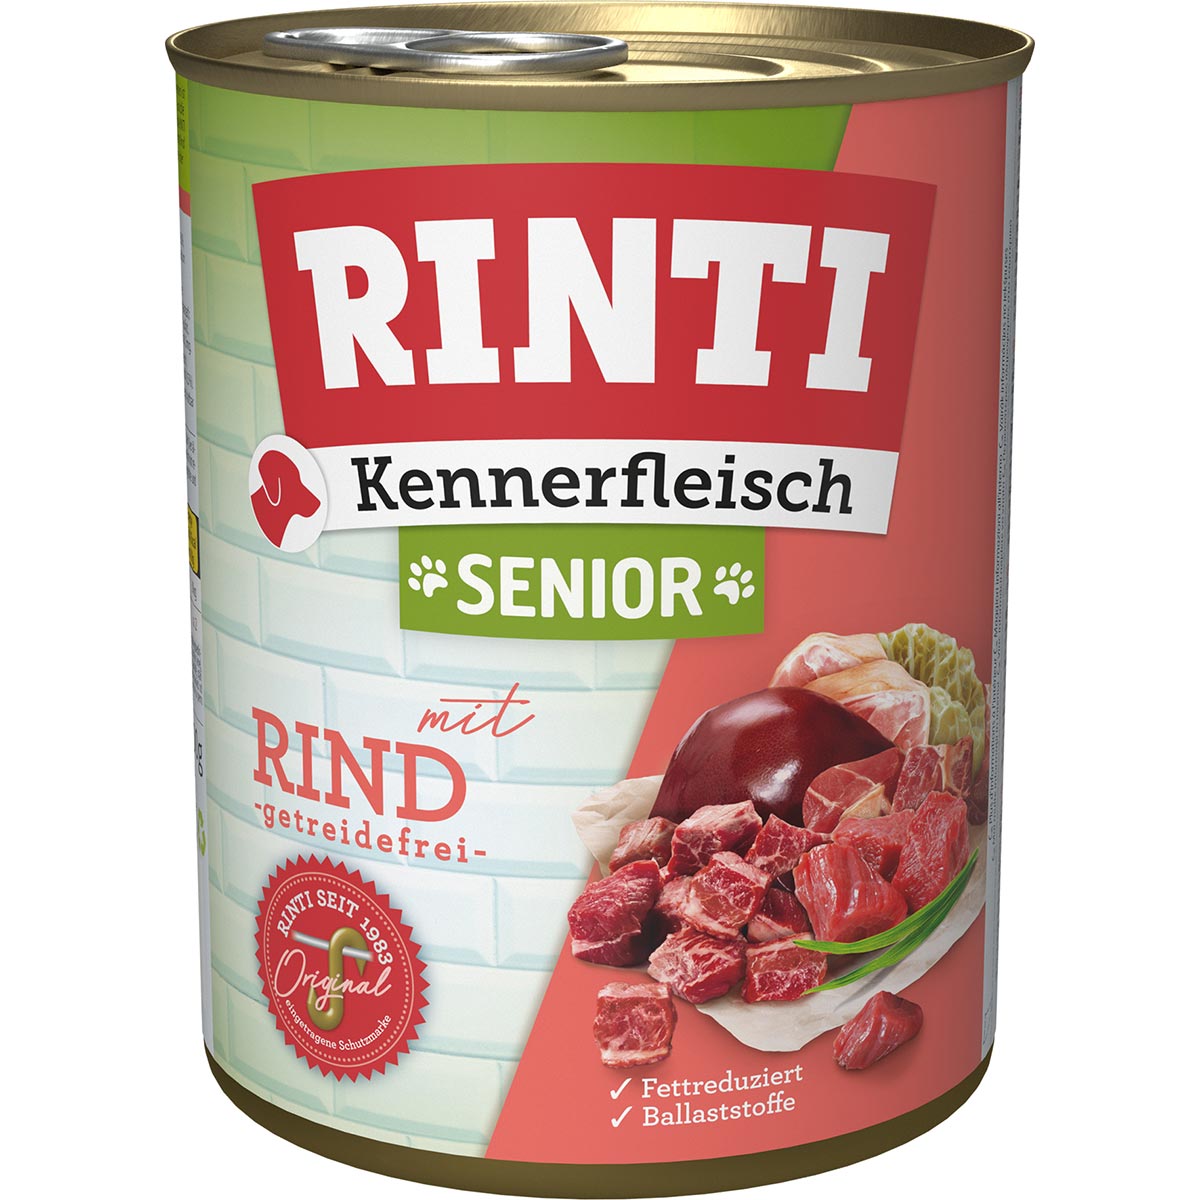 Rinti Kennerfleisch Senior Rind 12x800g von Rinti